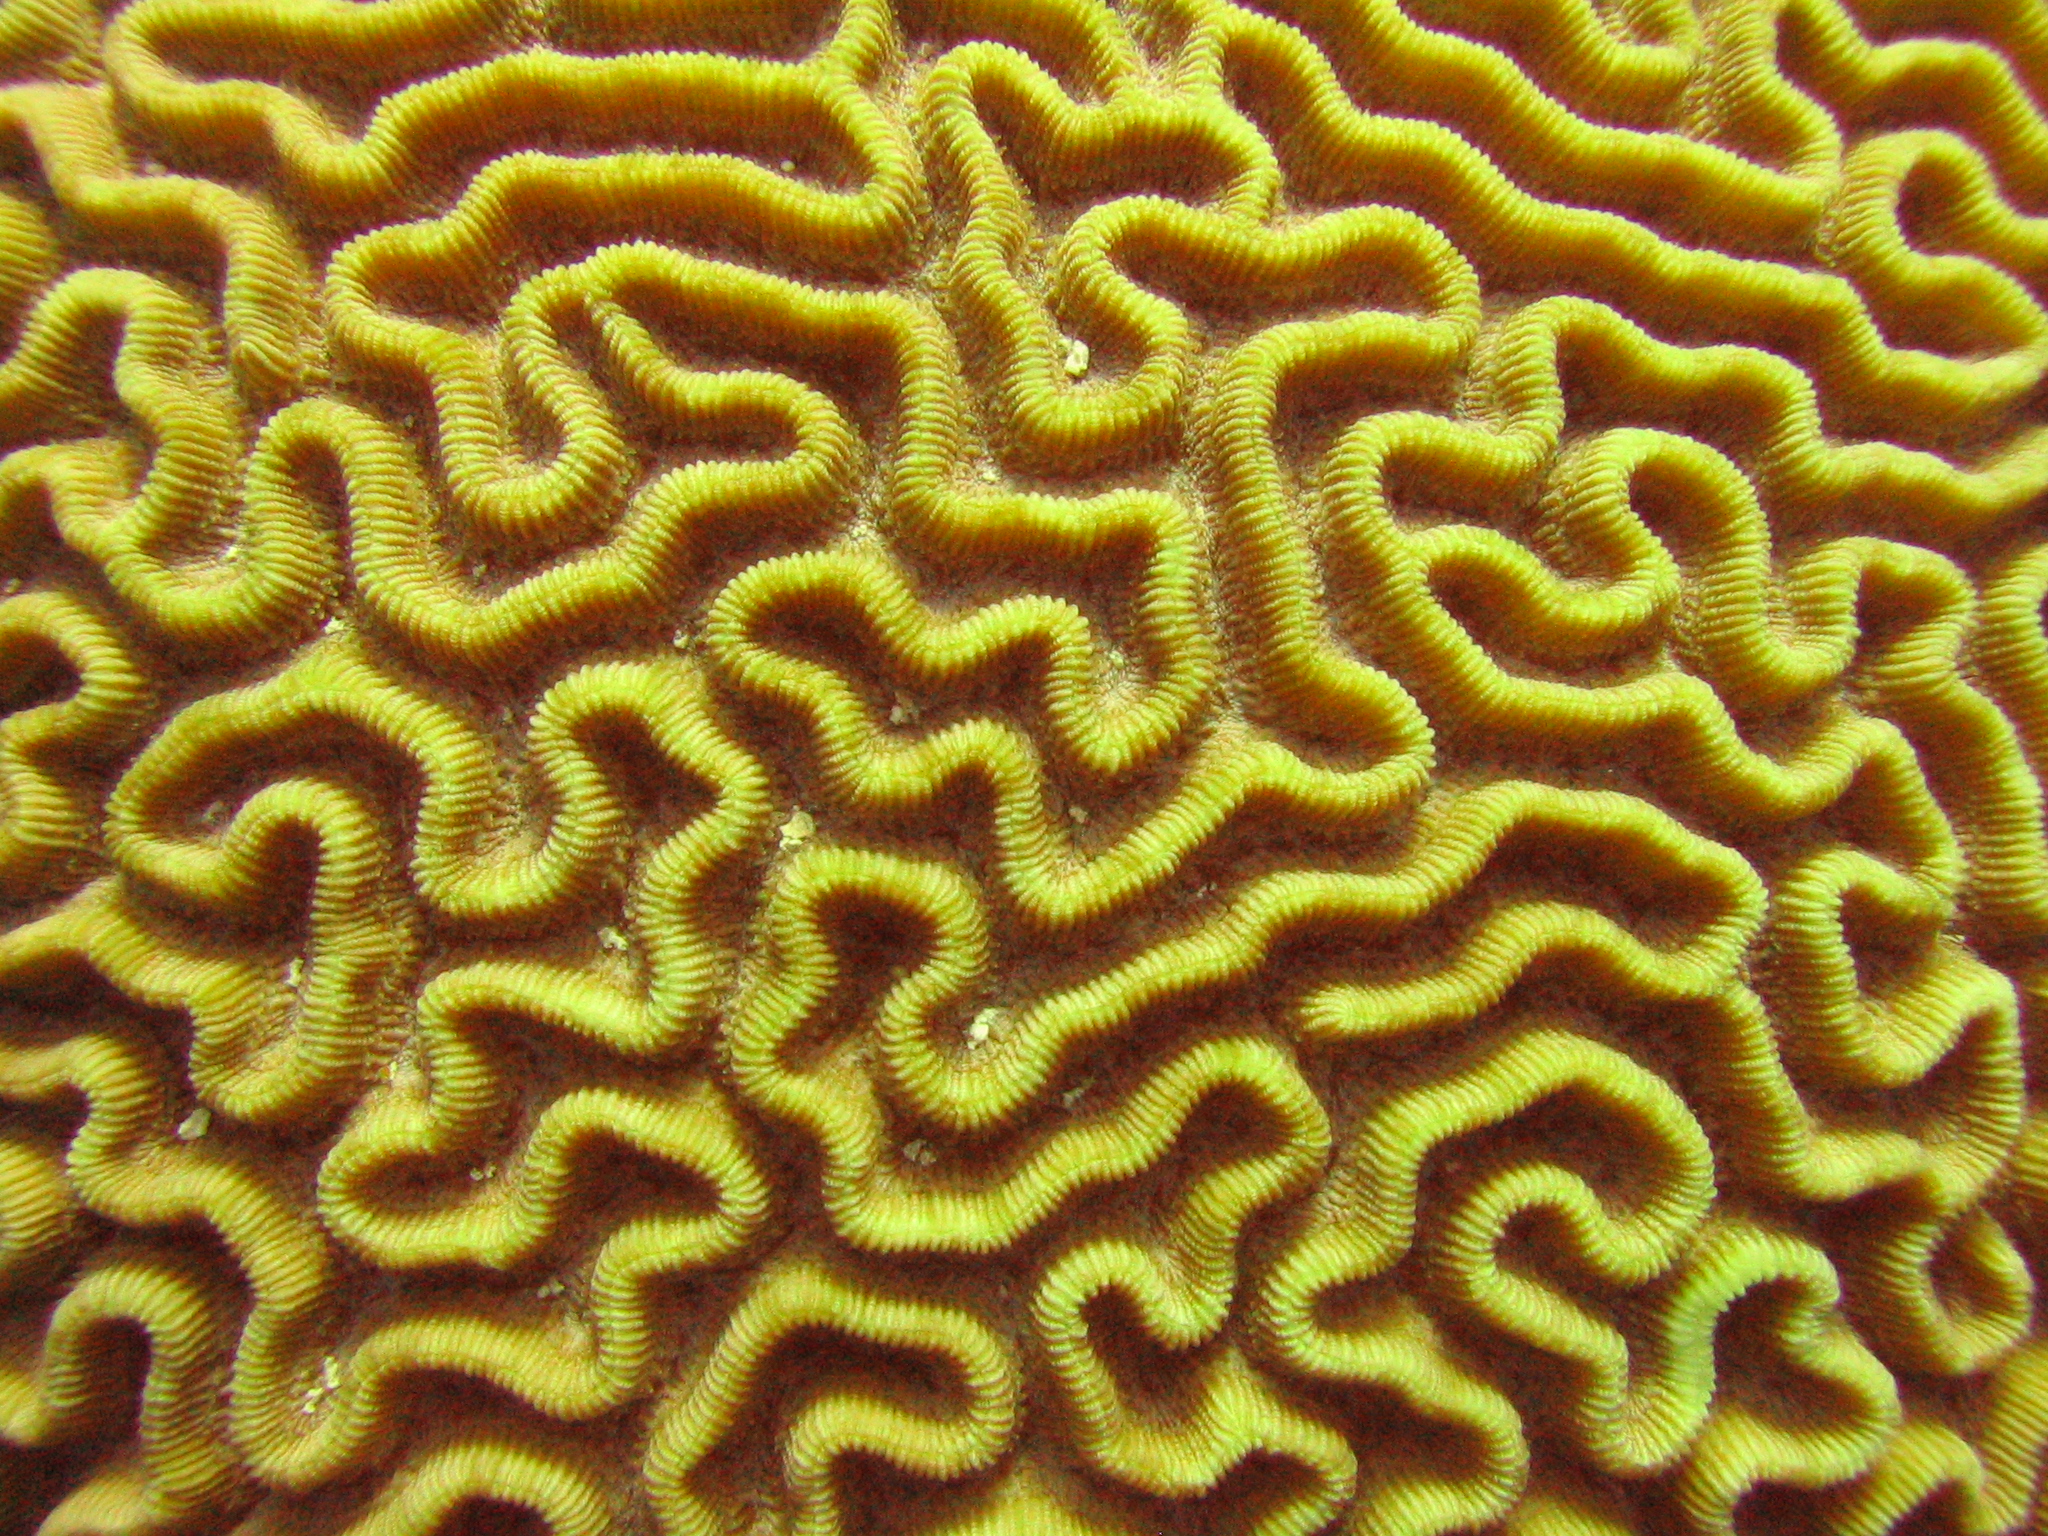 Brain Coral 1b